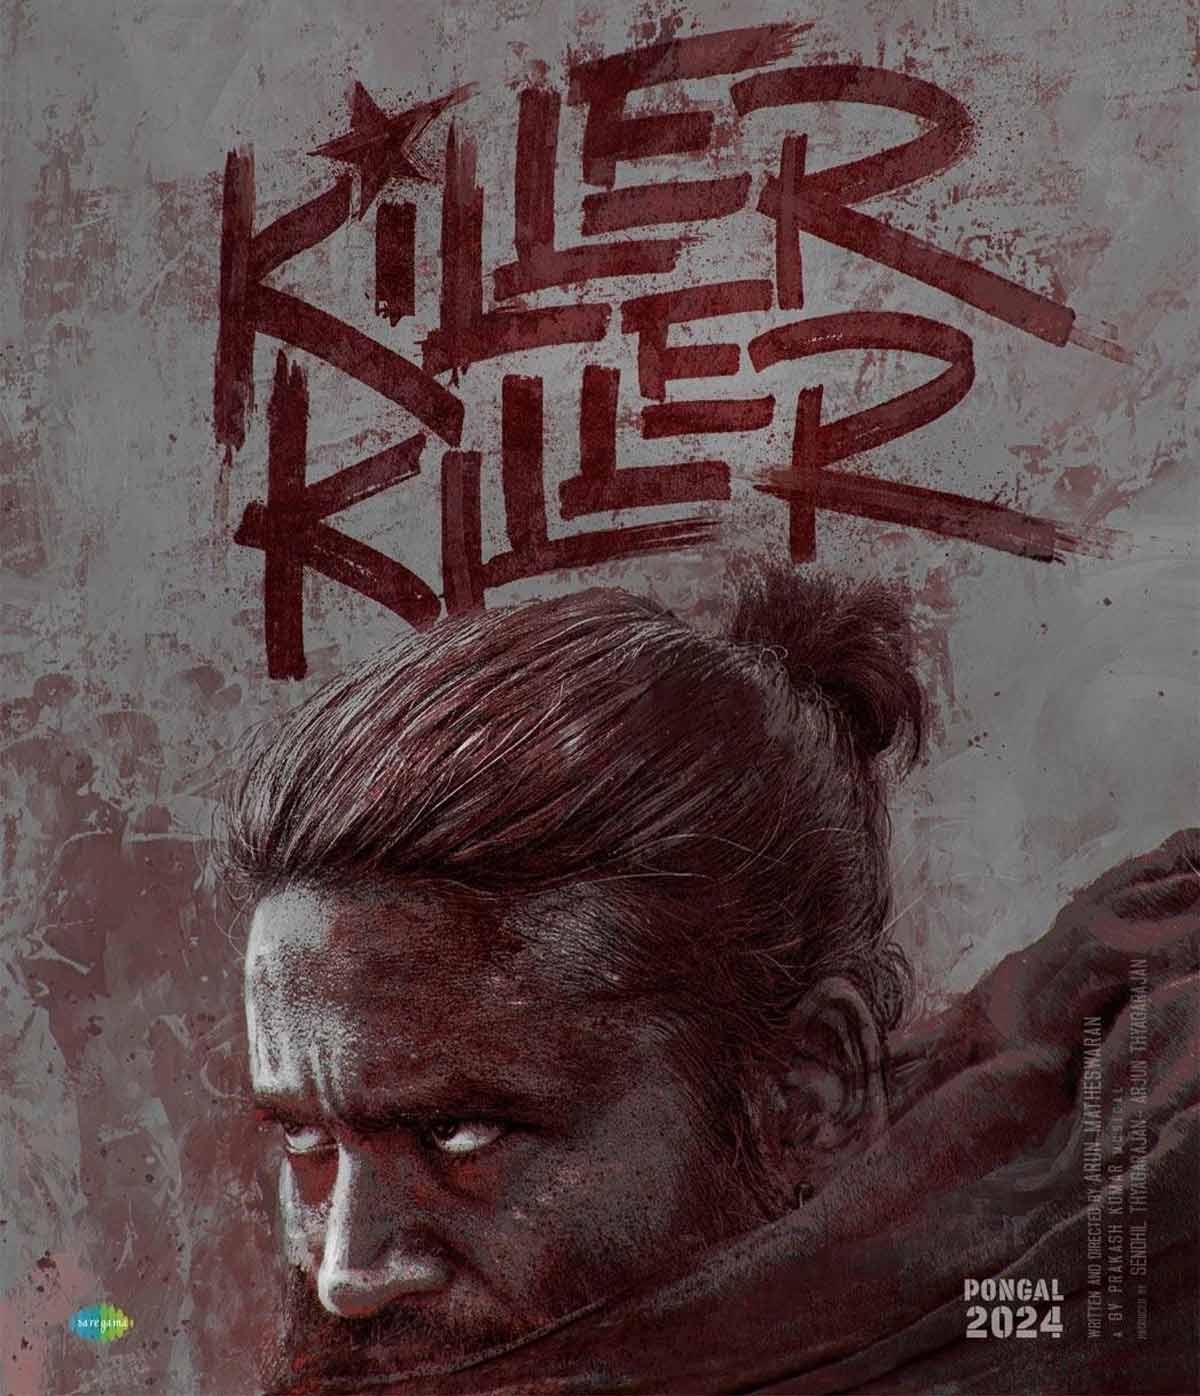 Captain Miller: Killer Killer is Exhilarating